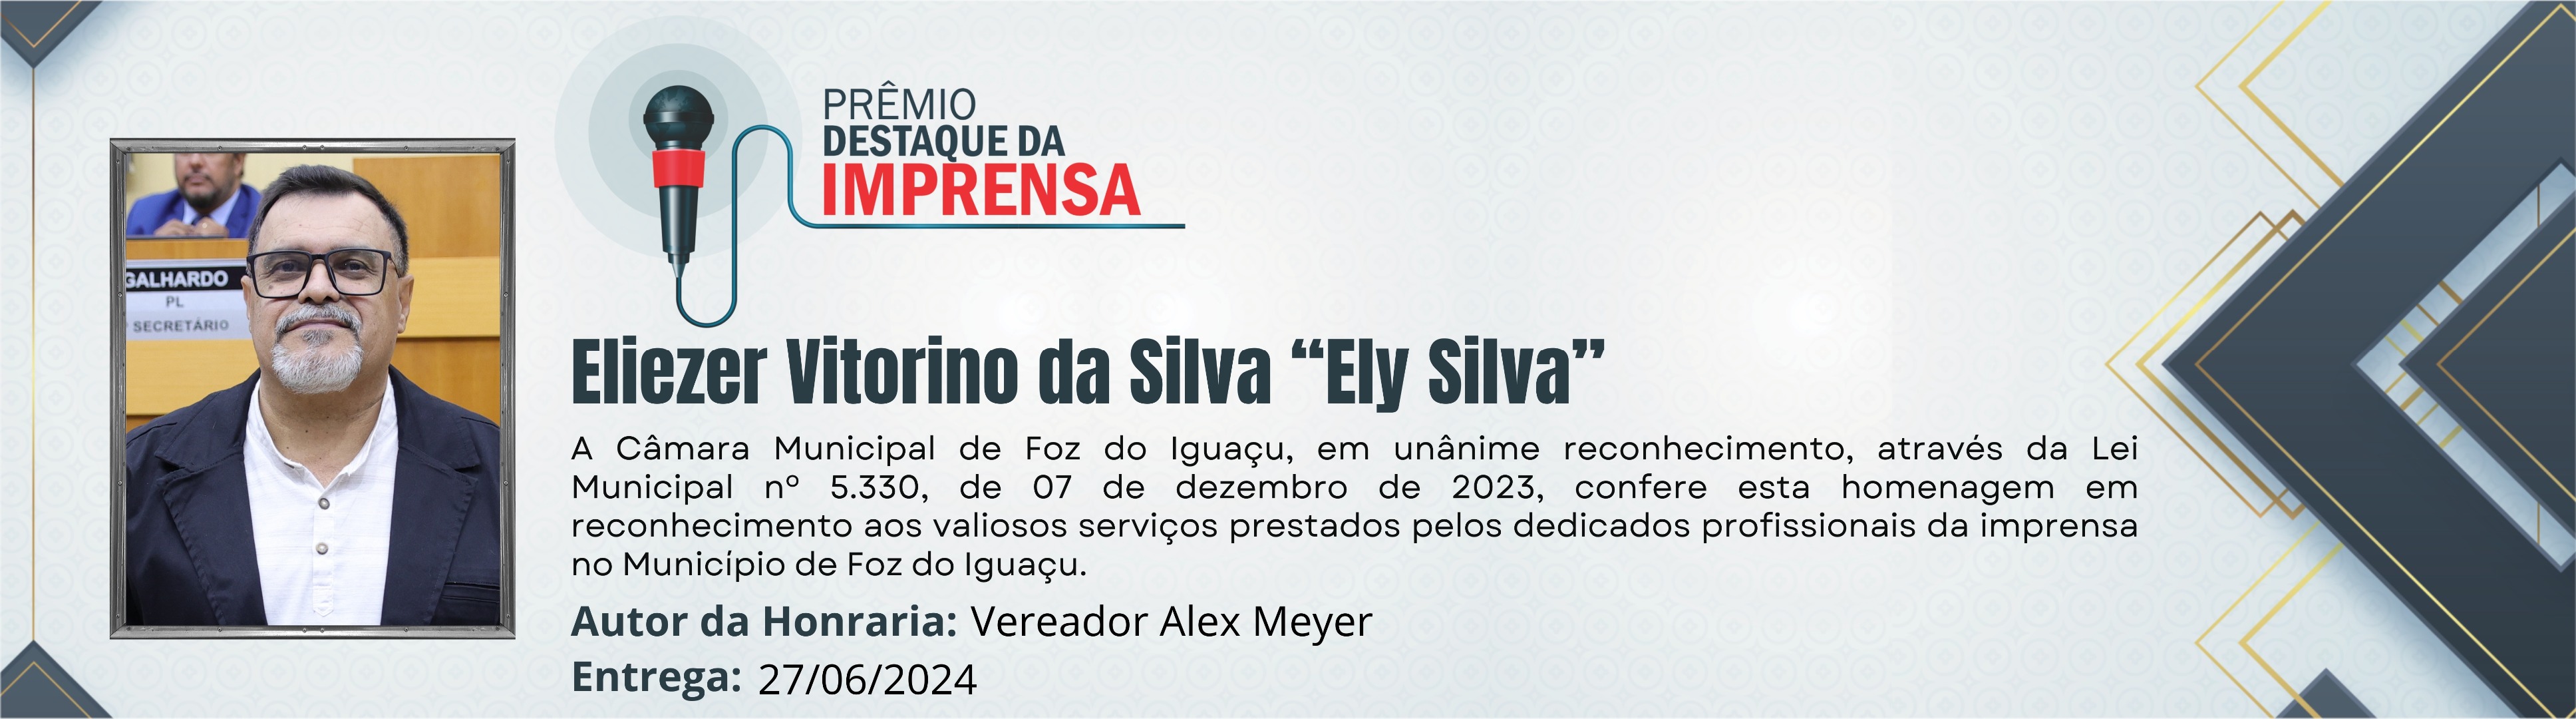 Eliezer Vitorino da Silva “Ely Silva”